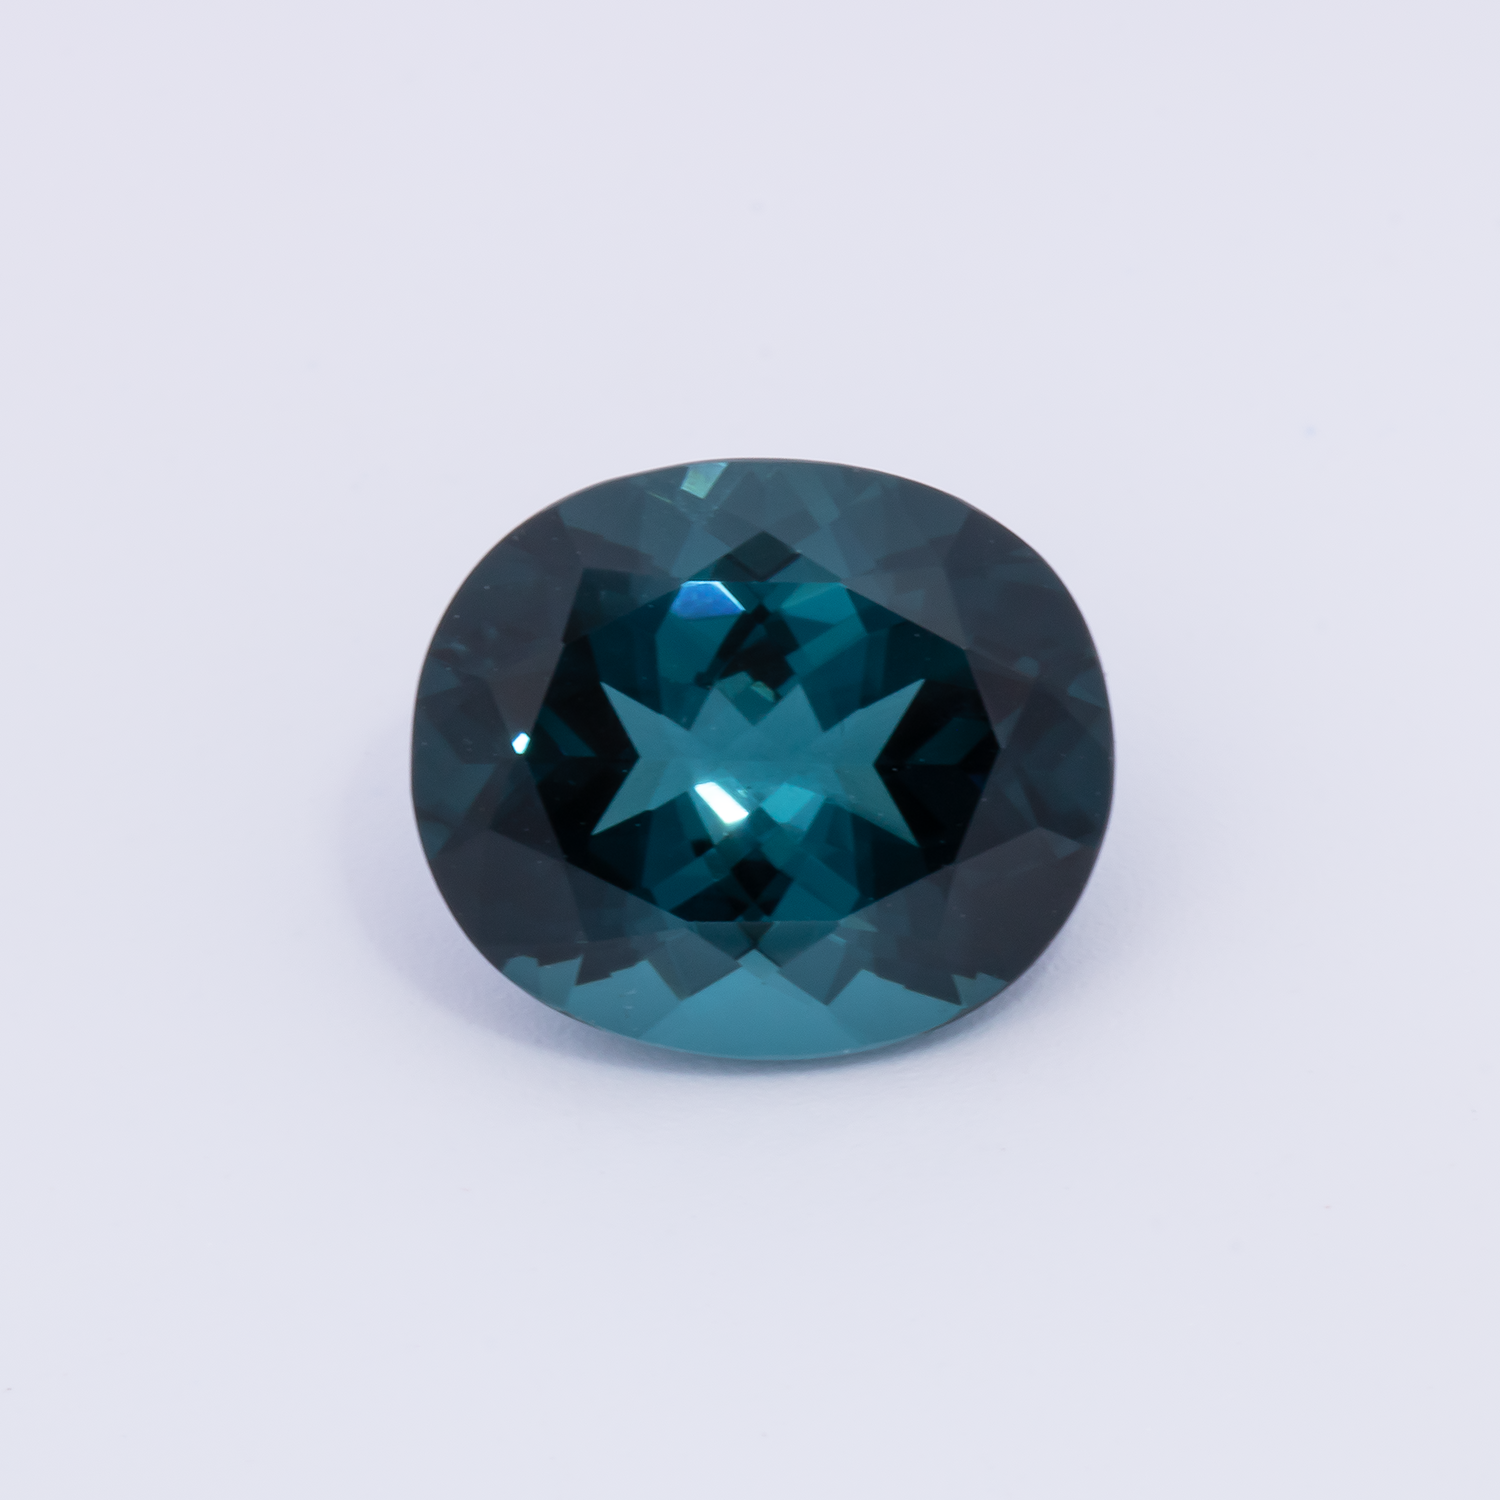 Turmalin - blau, oval, 10.4x9 mm, 3.53 cts, Nr. TR991093